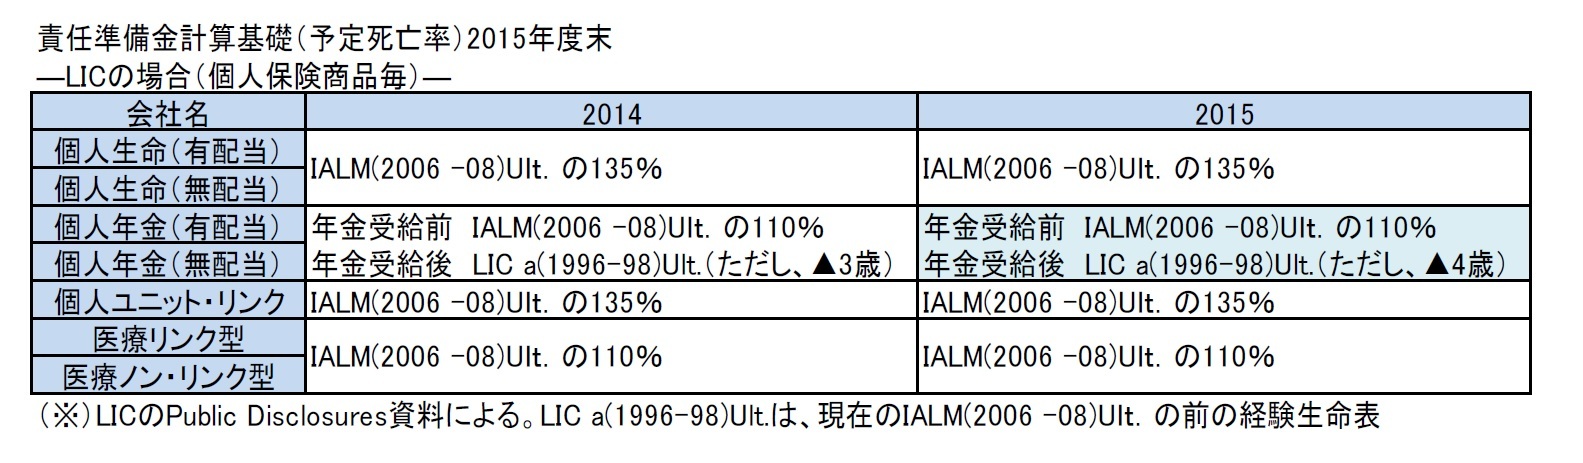 責任準備金計算基礎（予定死亡率）2015年度末―LICの場合（個人保険商品毎）―